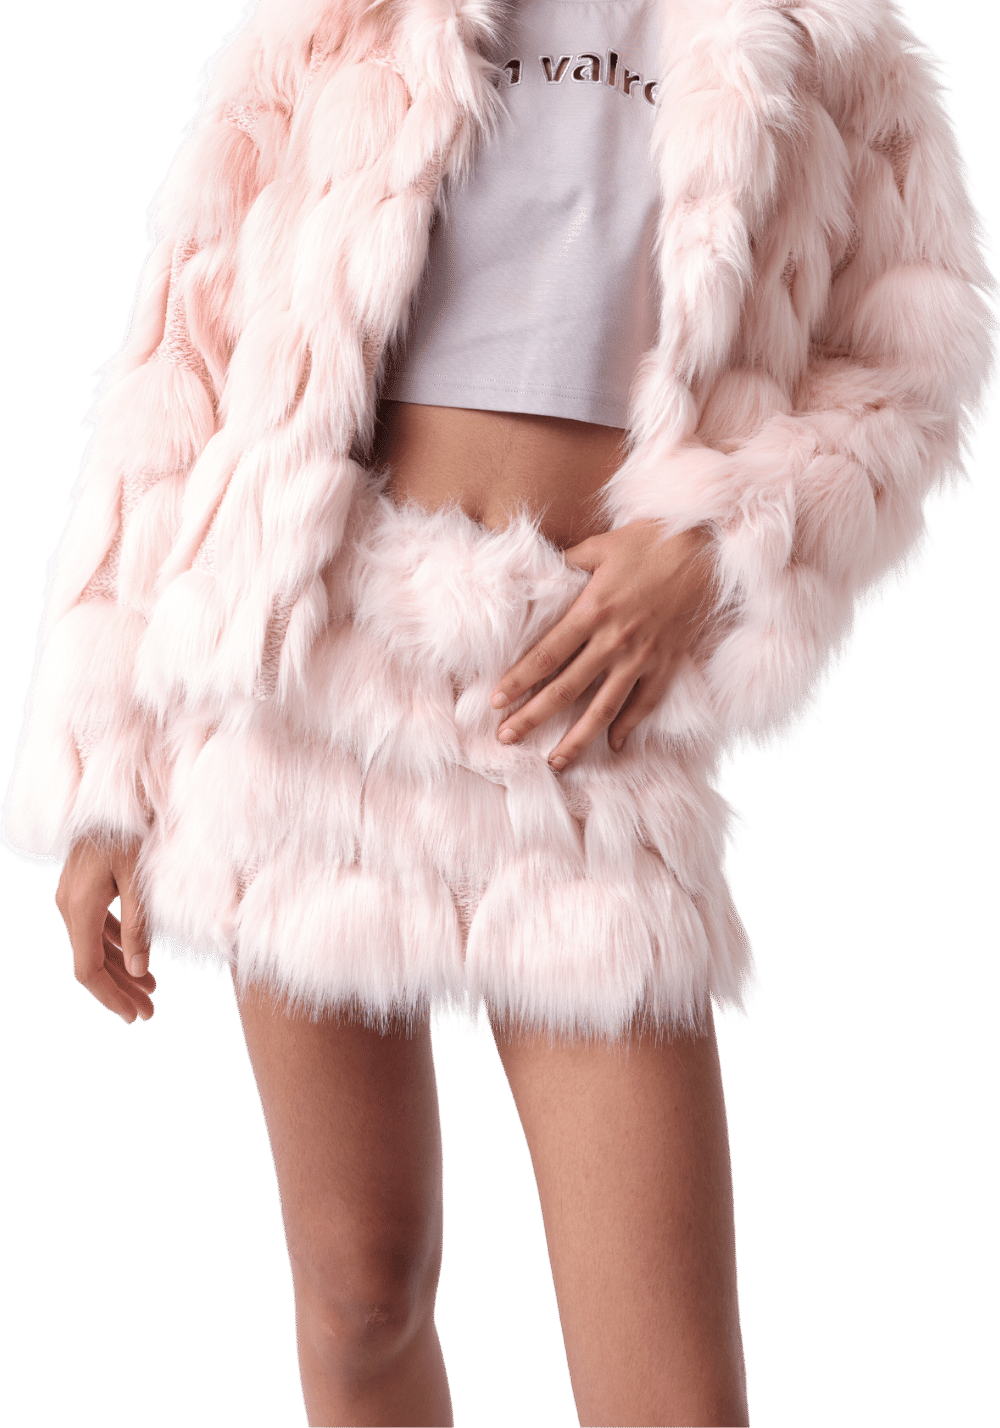 Pink Fur Skirt - PSYLOS 1, Pink Fur Skirt, Dress/Skirt, VANN VALRENCÉ, PSYLOS 1